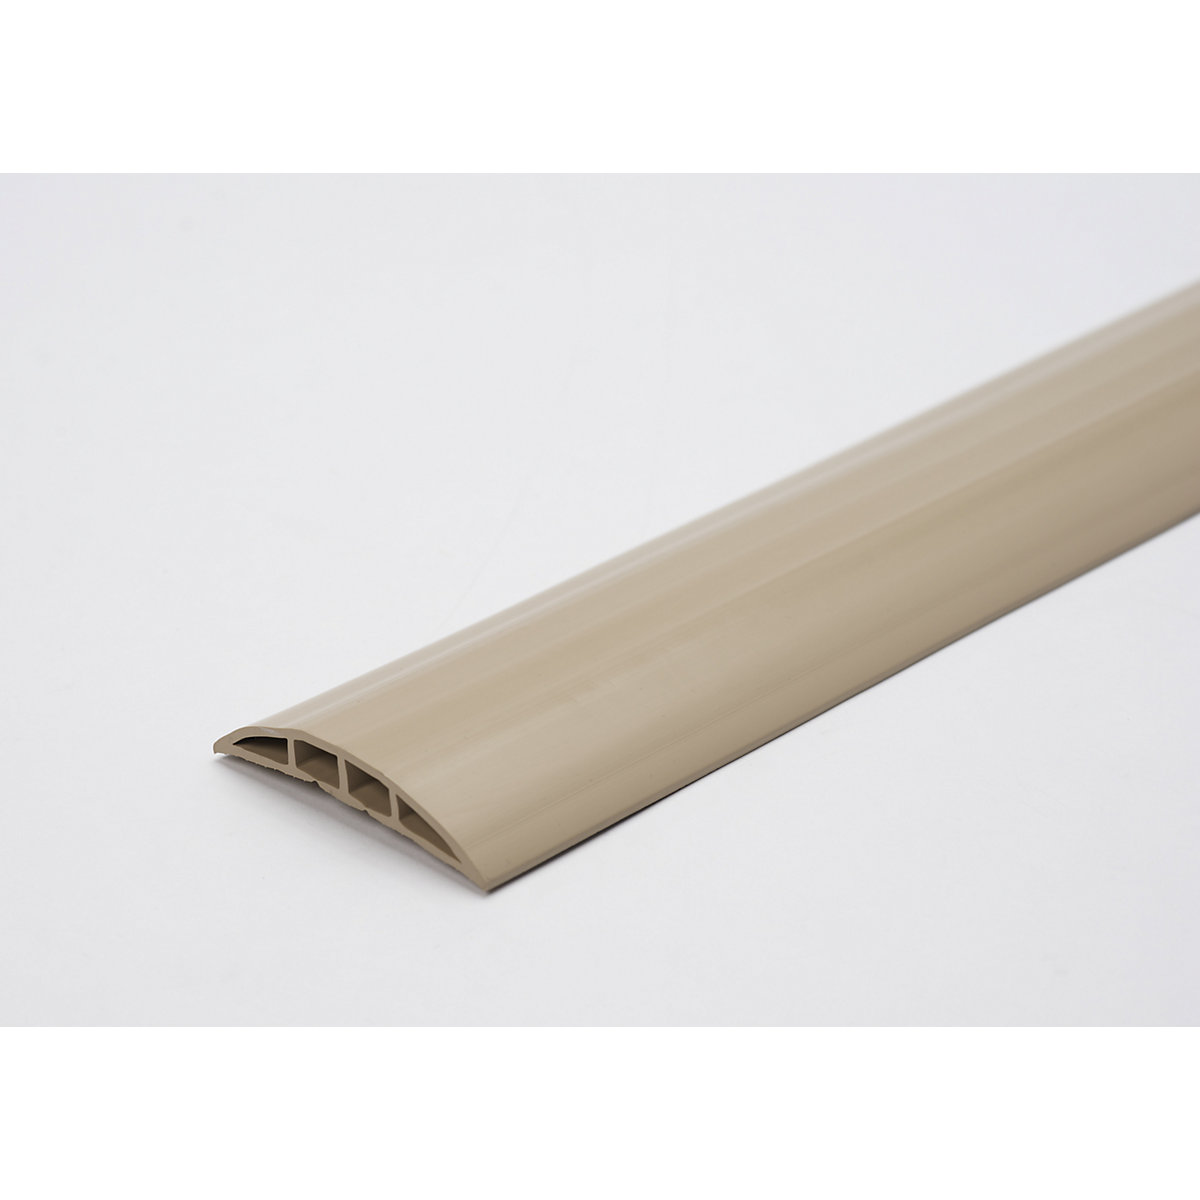 Canalina passacavo in plastica, per cavi e tubi flessibili con Ø fino a 7,5 mm, beige, 2 camere, lunghezza 1,5 m-6